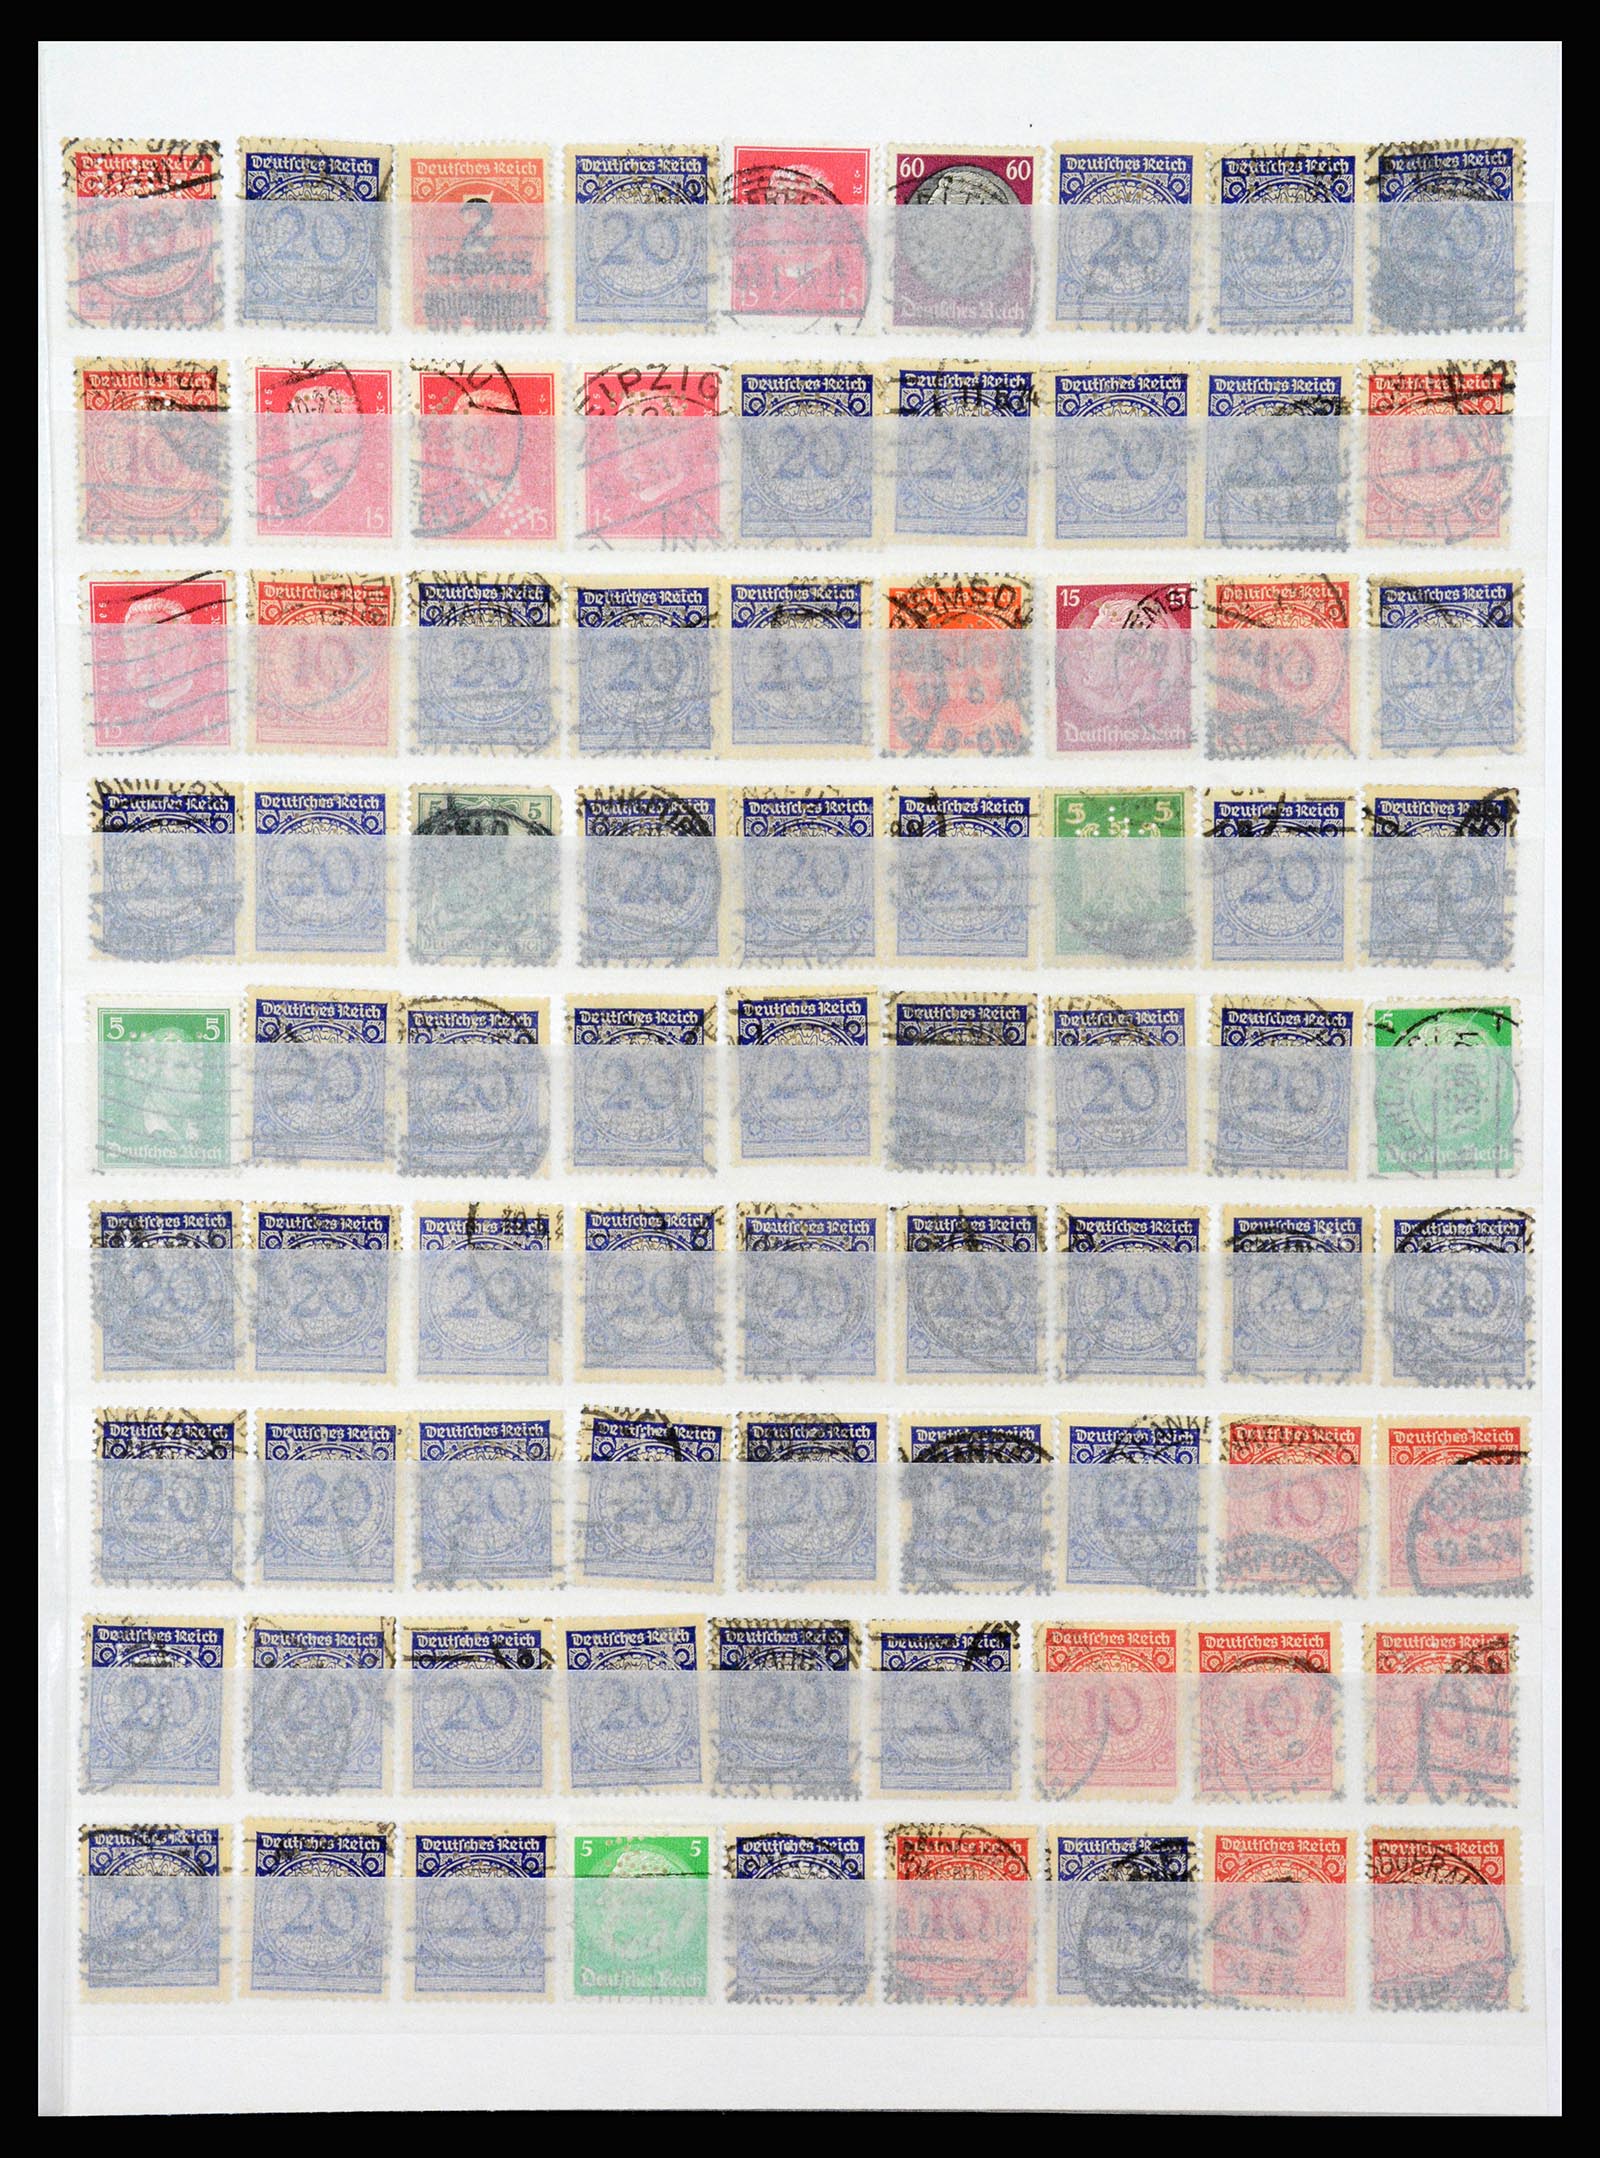 37254 007 - Stamp collection 37254 German Reich perfins 1900-1945.